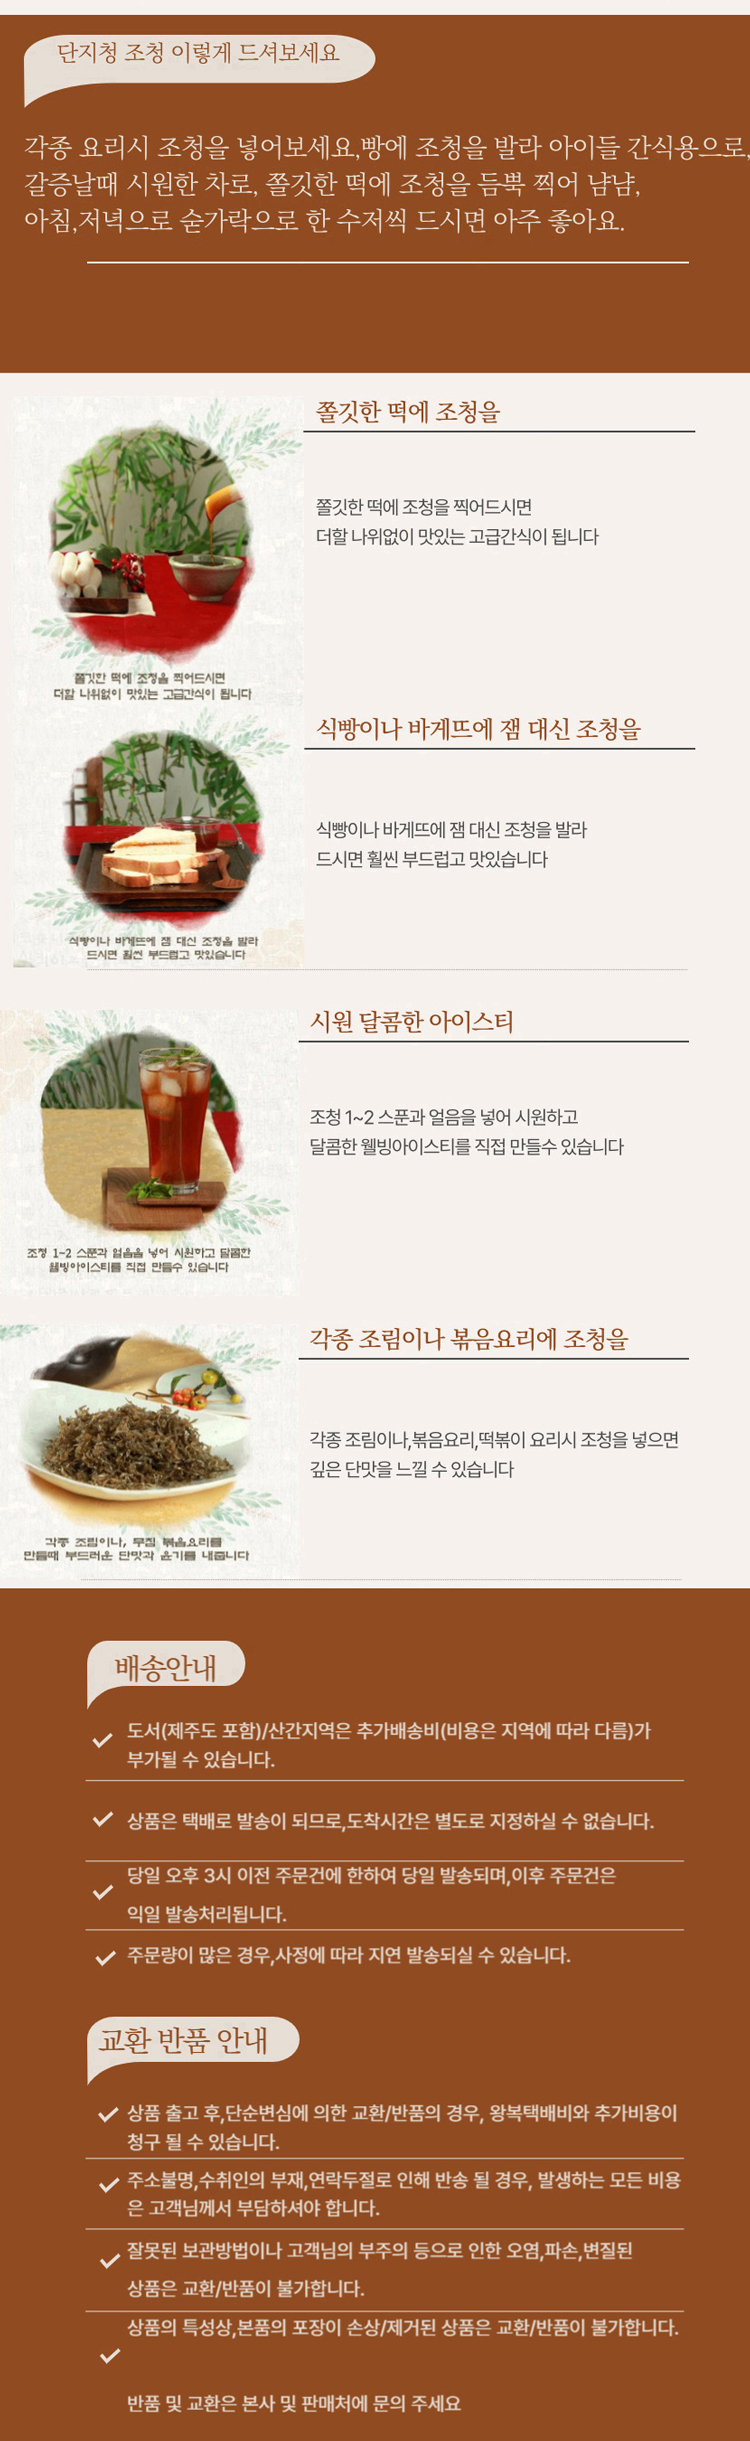 조청효능,유기농조청,엿만들기,가락엿,수제엿